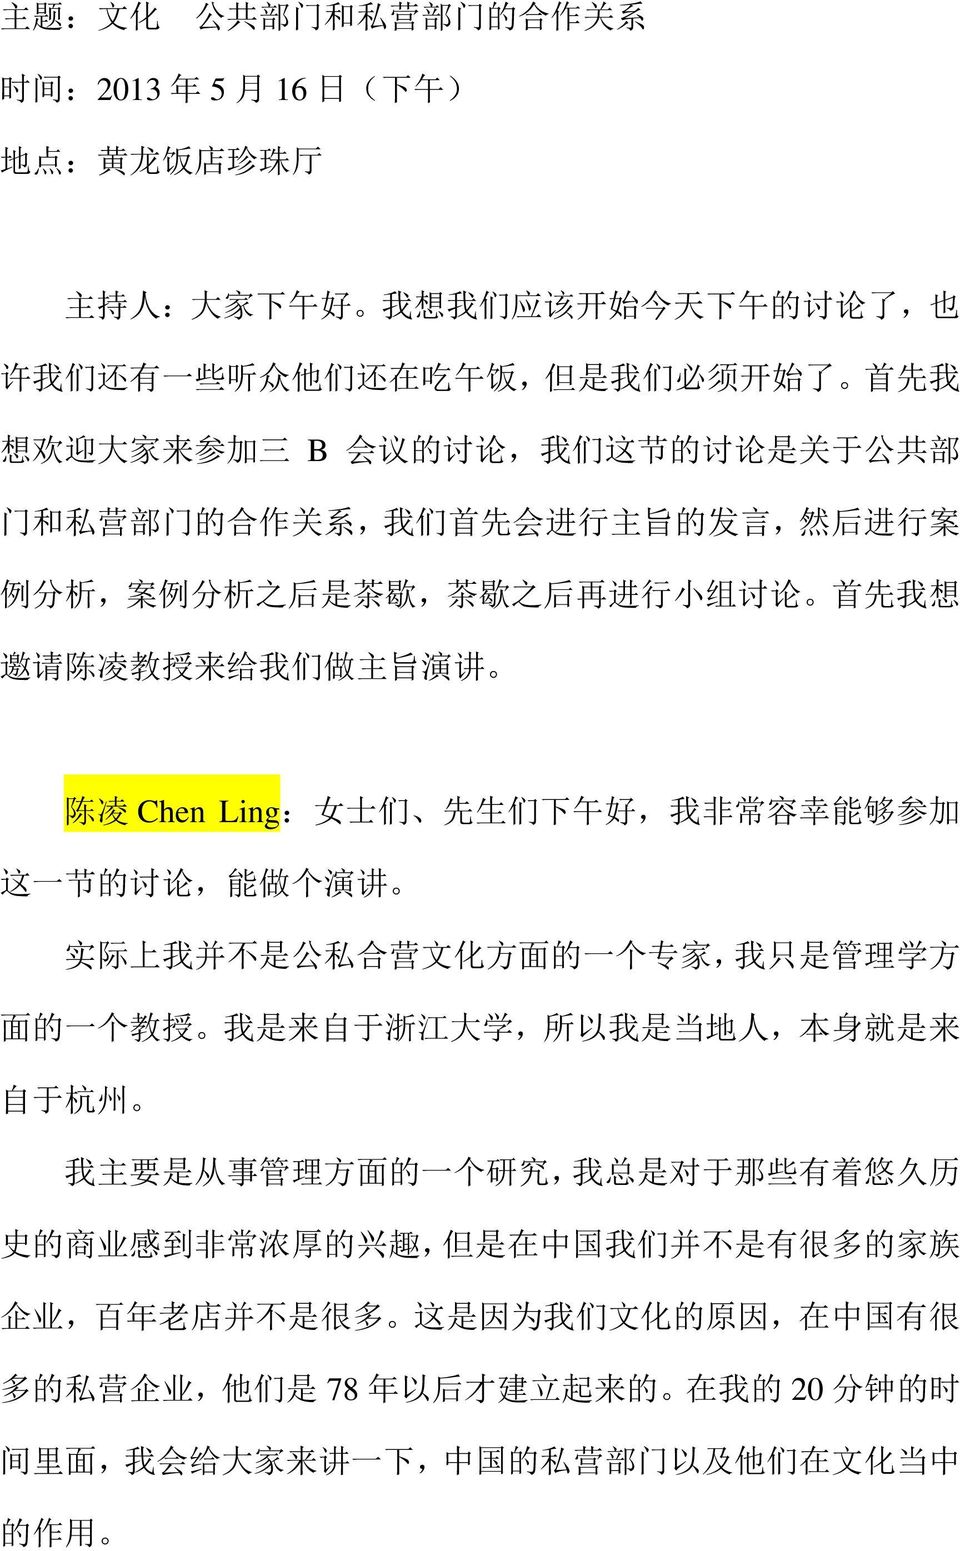 陈 凌 Chen Ling: 女 士 们 先 生 们 下 午 好, 我 非 常 容 幸 能 够 参 加 这 一 节 的 讨 论, 能 做 个 演 讲 实 际 上 我 并 不 是 公 私 合 营 文 化 方 面 的 一 个 专 家, 我 只 是 管 理 学 方 面 的 一 个 教 授 我 是 来 自 于 浙 江 大 学, 所 以 我 是 当 地 人, 本 身 就 是 来 自 于 杭 州 我 主 要